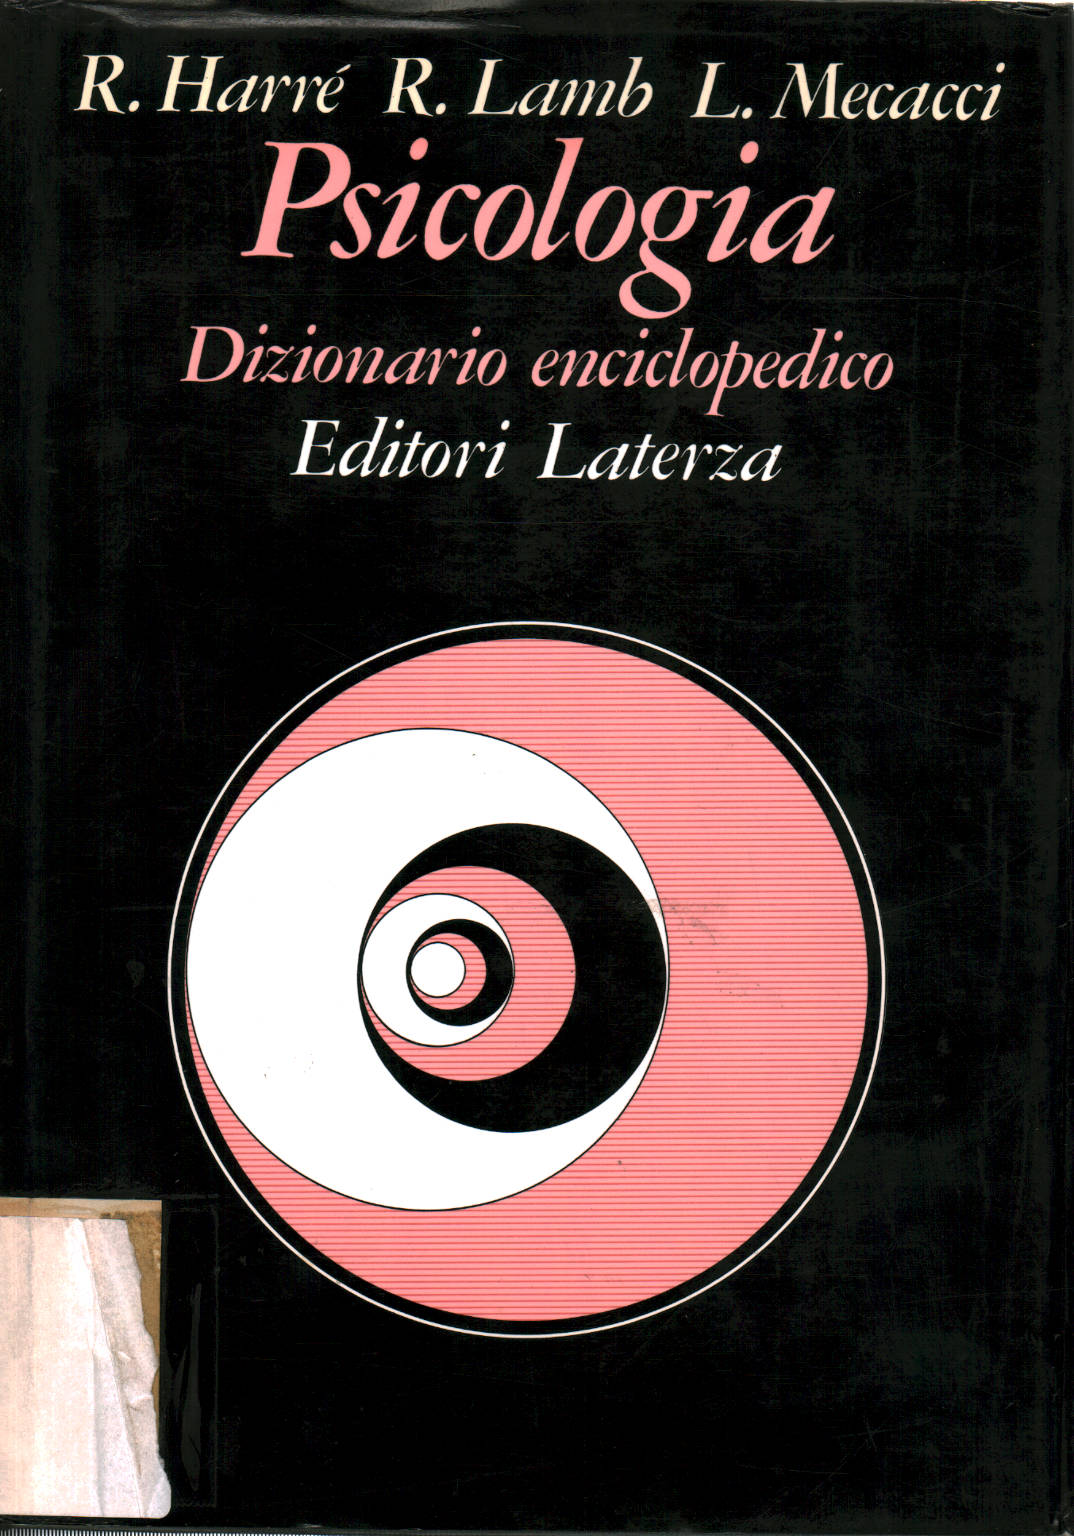 Psicologia:Dizionario Enciclopedico, Rom Harrè Roger Lamb Luciano Mecacci